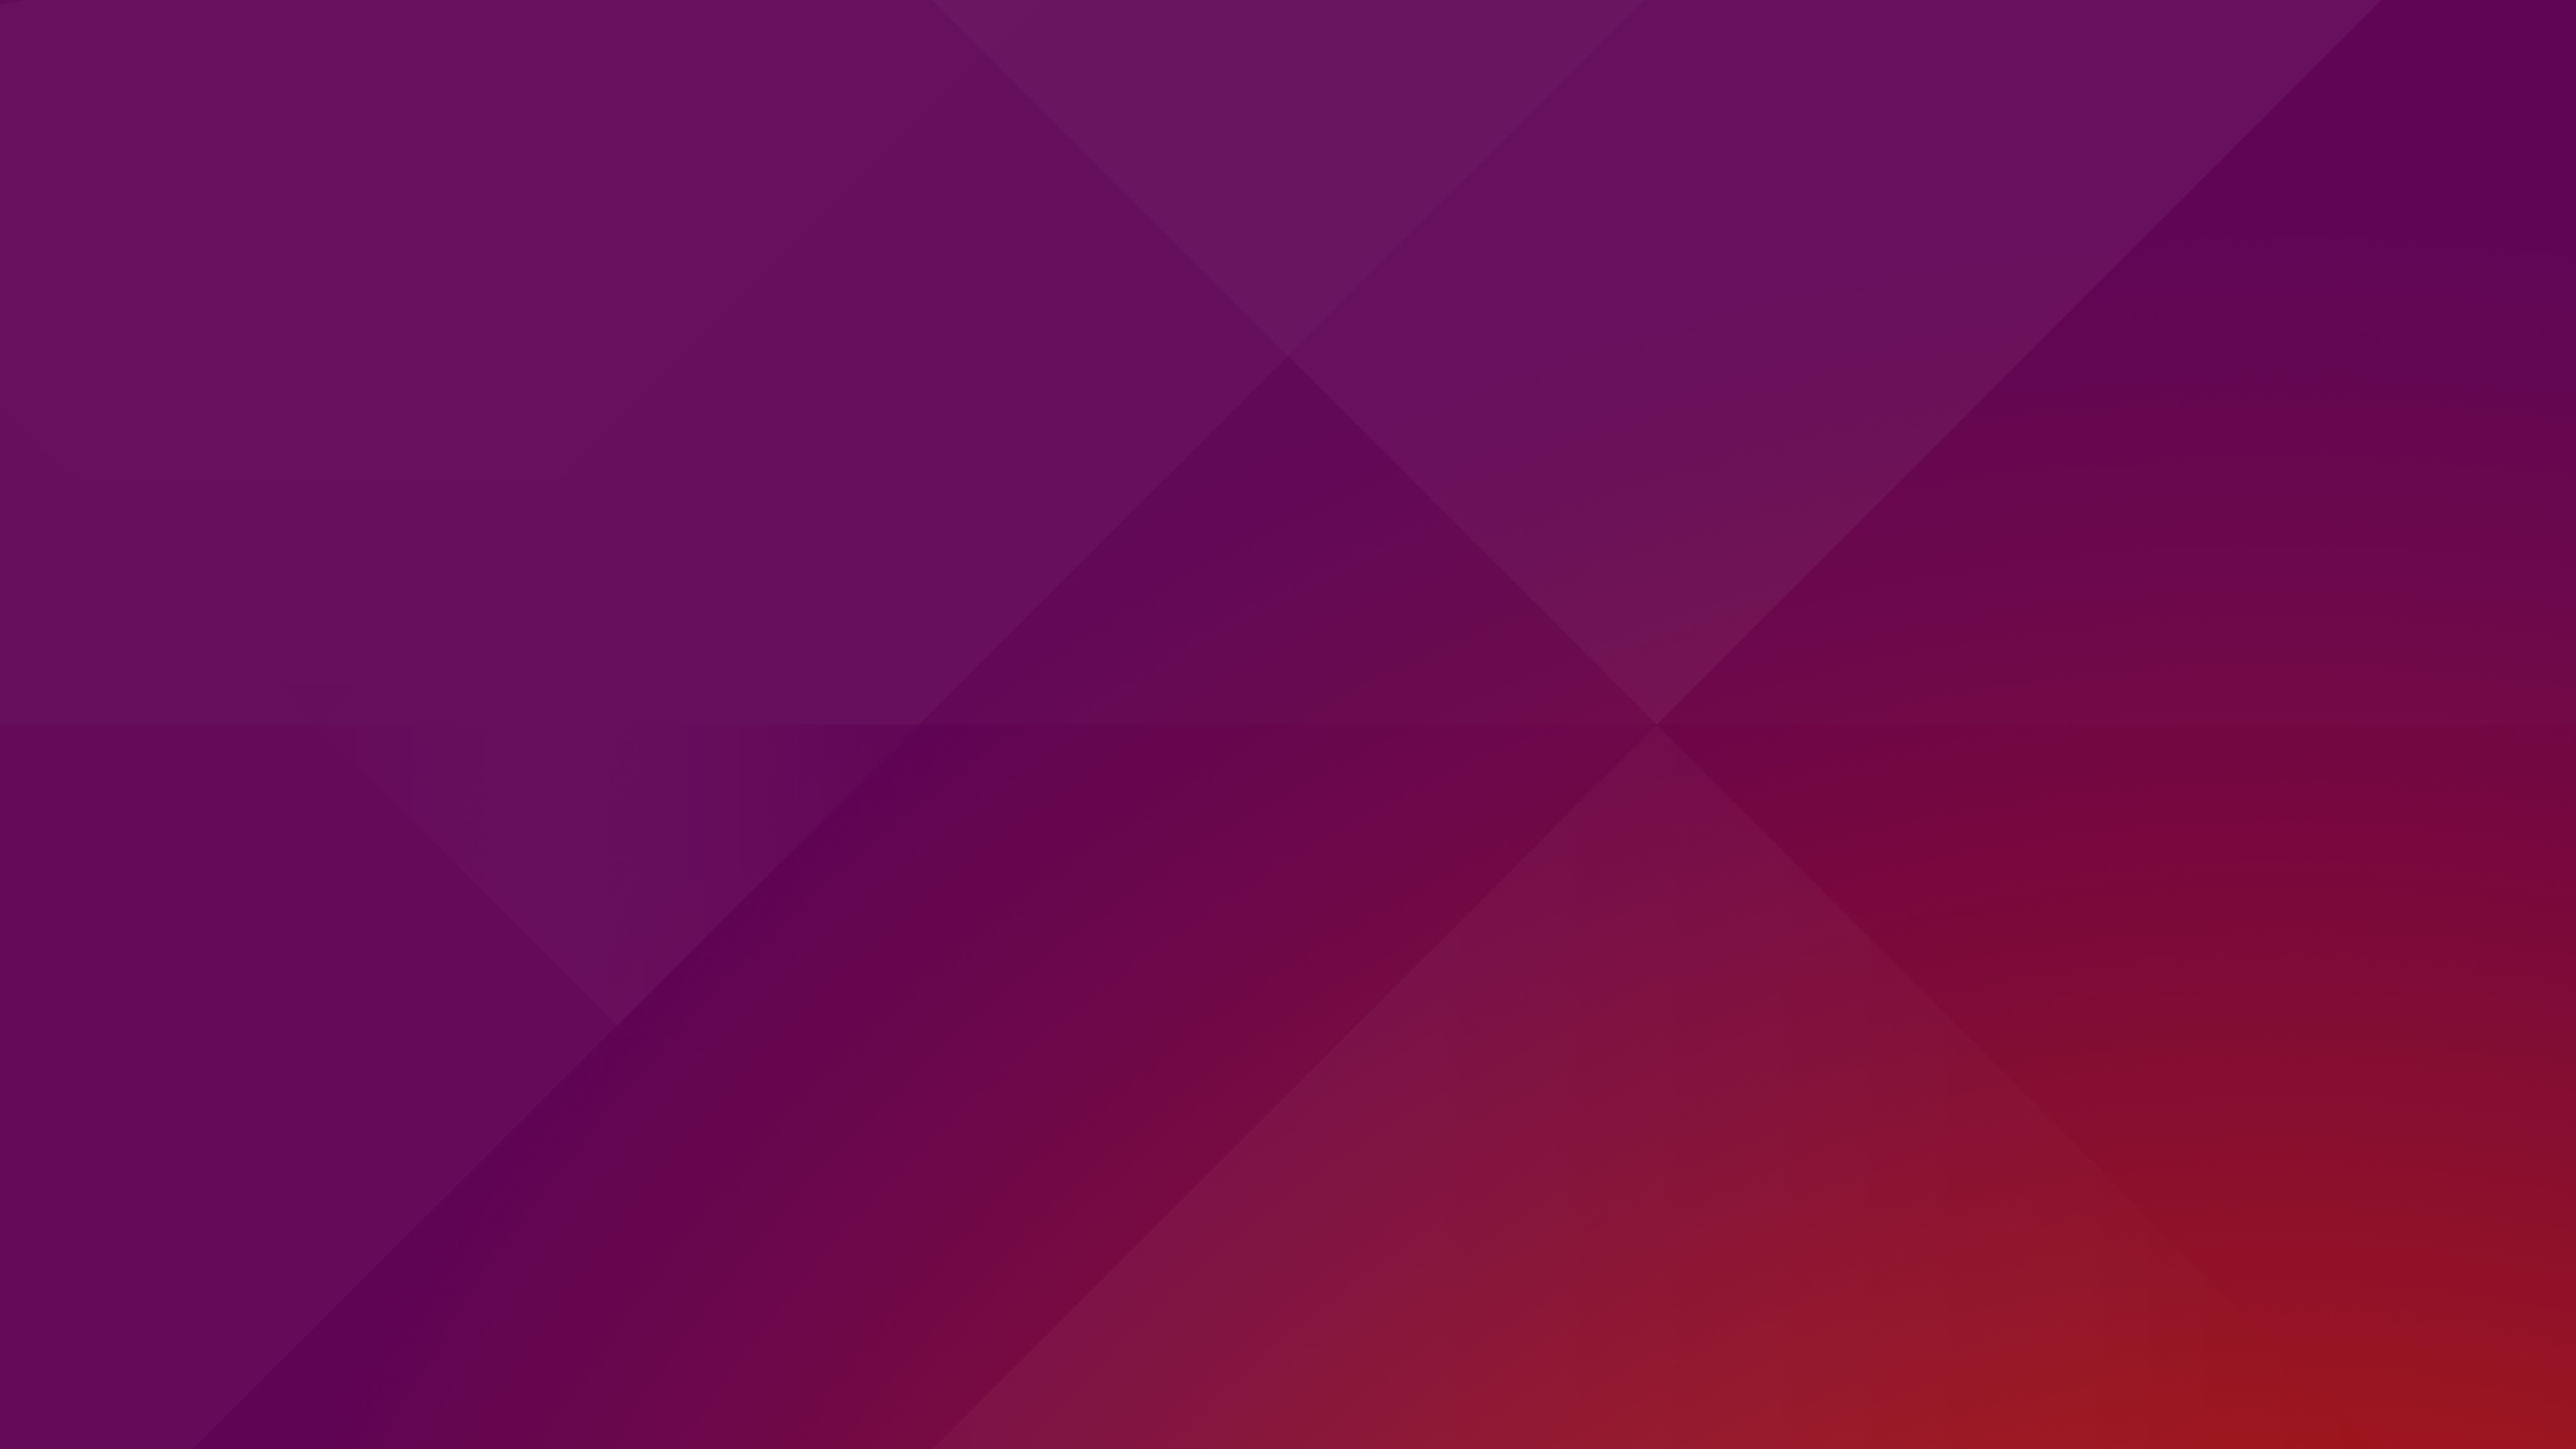 Hình nền Ubuntu sẽ mang đến một không gian làm việc/sống cực kỳ sáng tạo. Hãy tận hưởng nó ngay bây giờ!